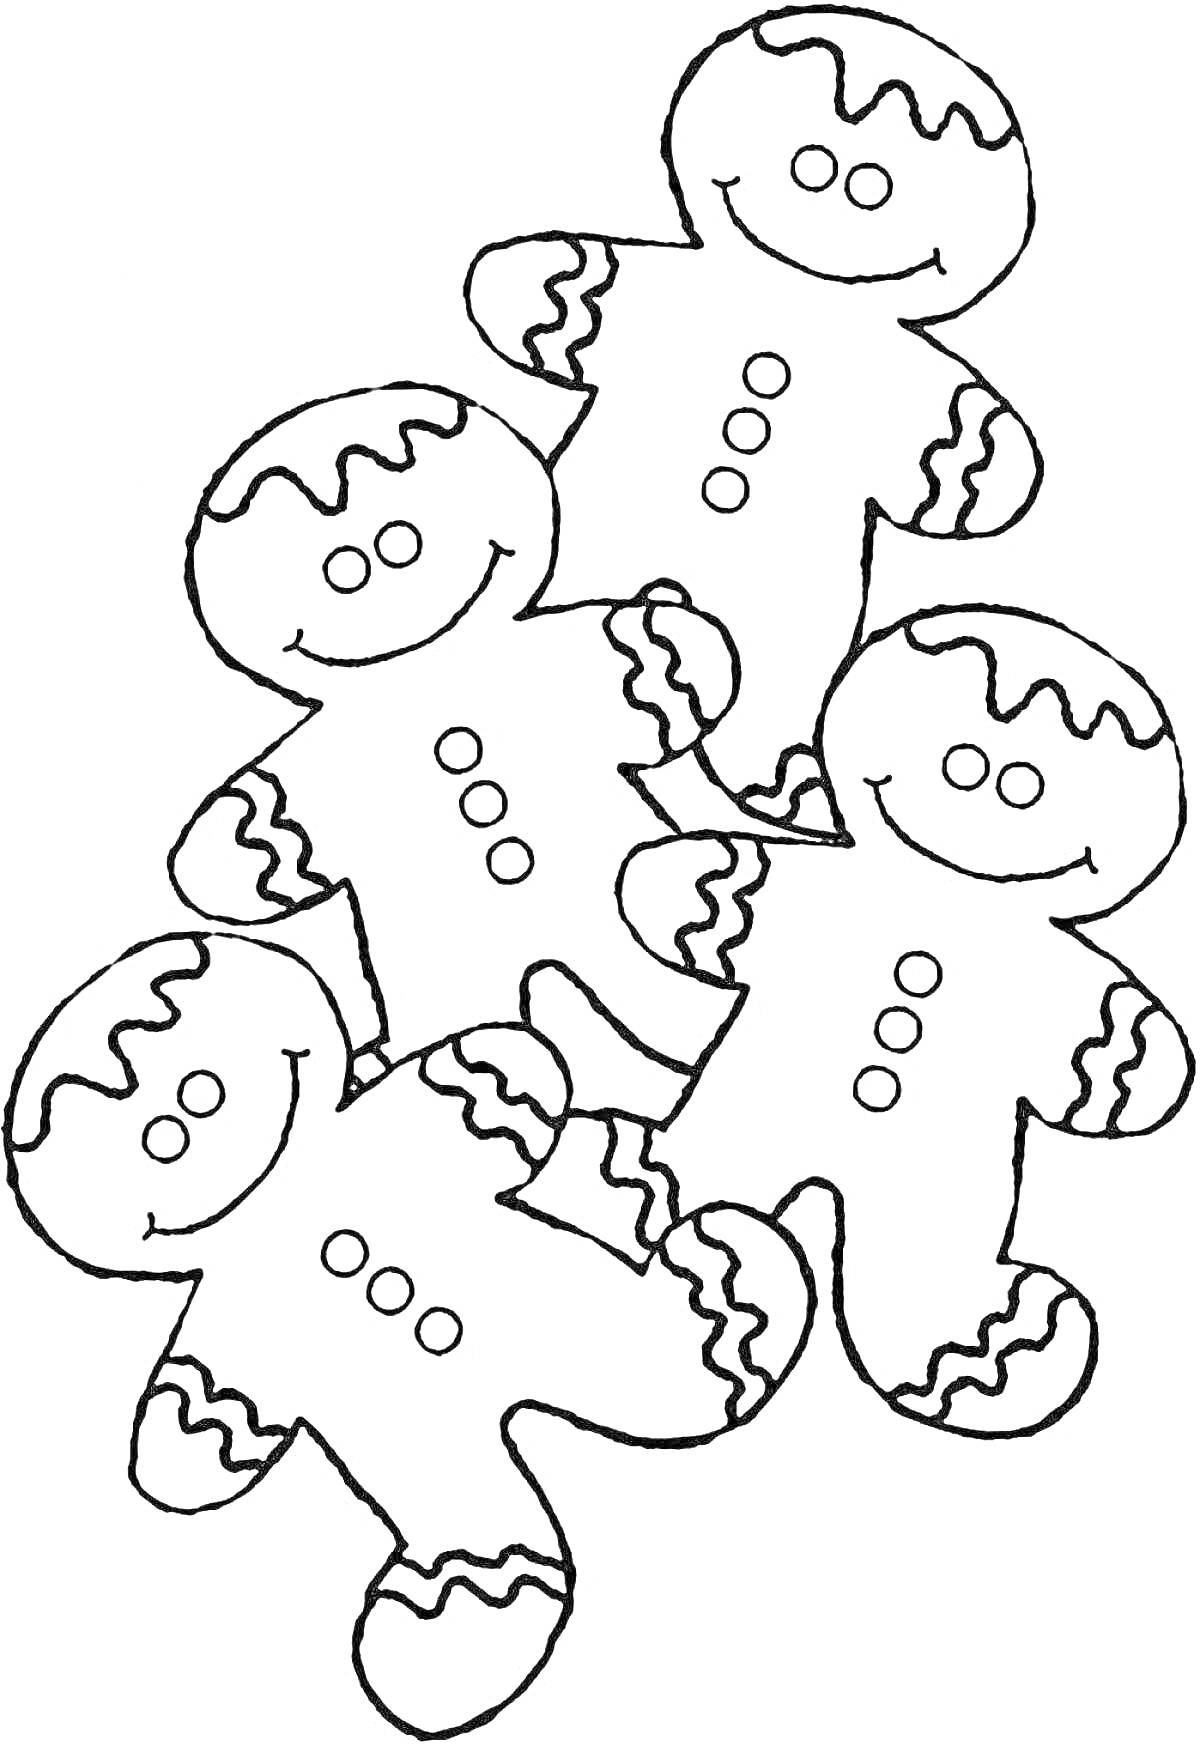 Раскраска Новогодние пряничные человечки с глазурью, четыре фигурки, улыбки, пуговицы, узор